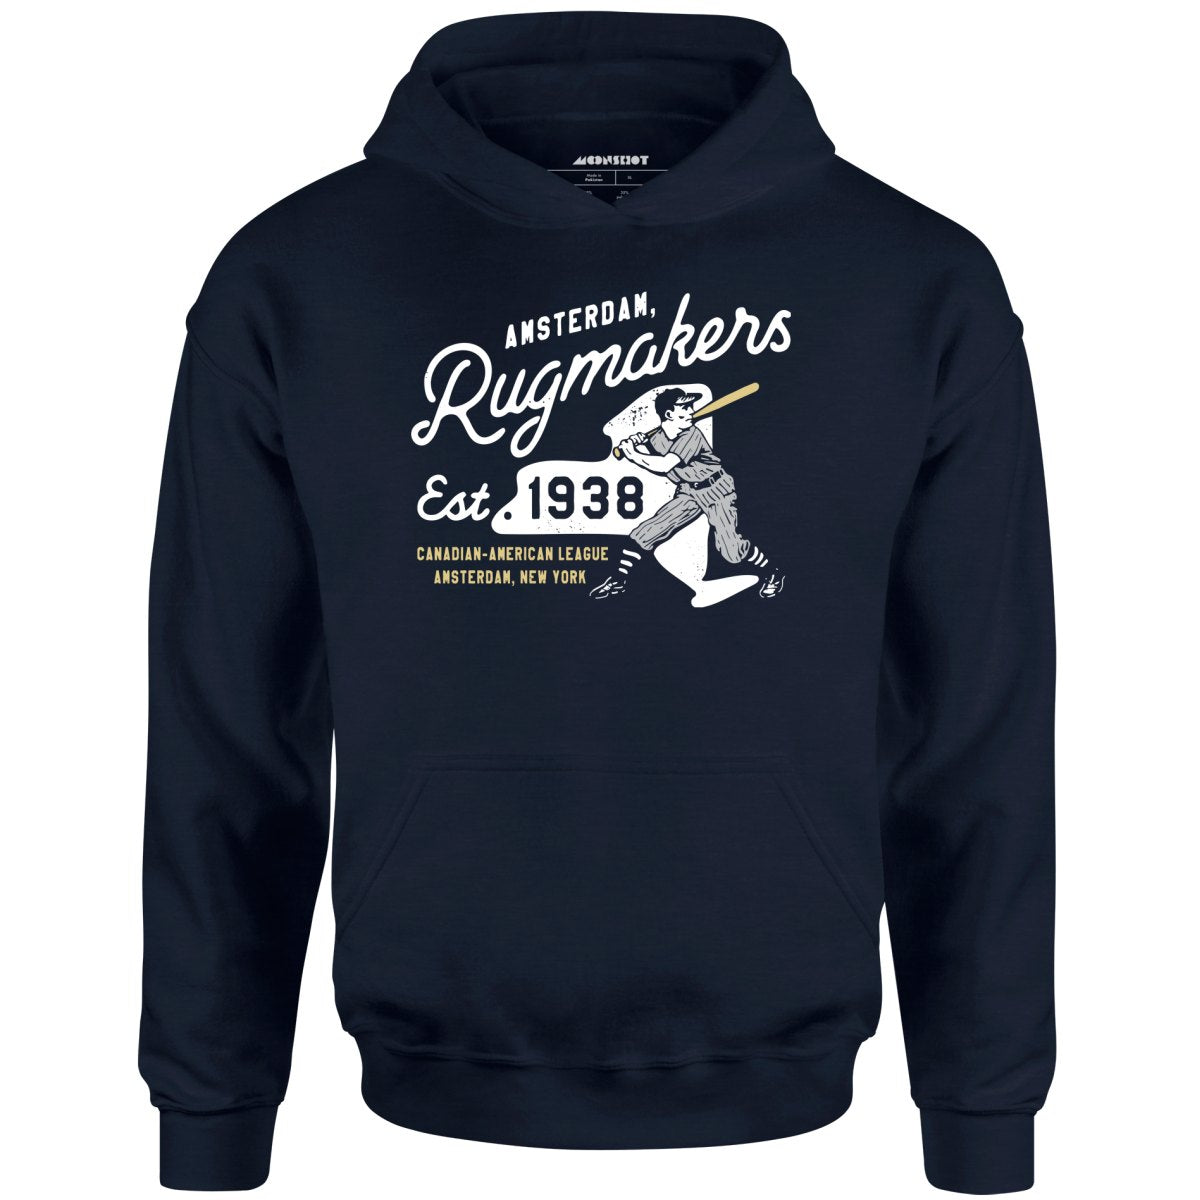 Amsterdam Rugmakers - New York - Vintage Defunct Baseball Teams - Unisex Hoodie